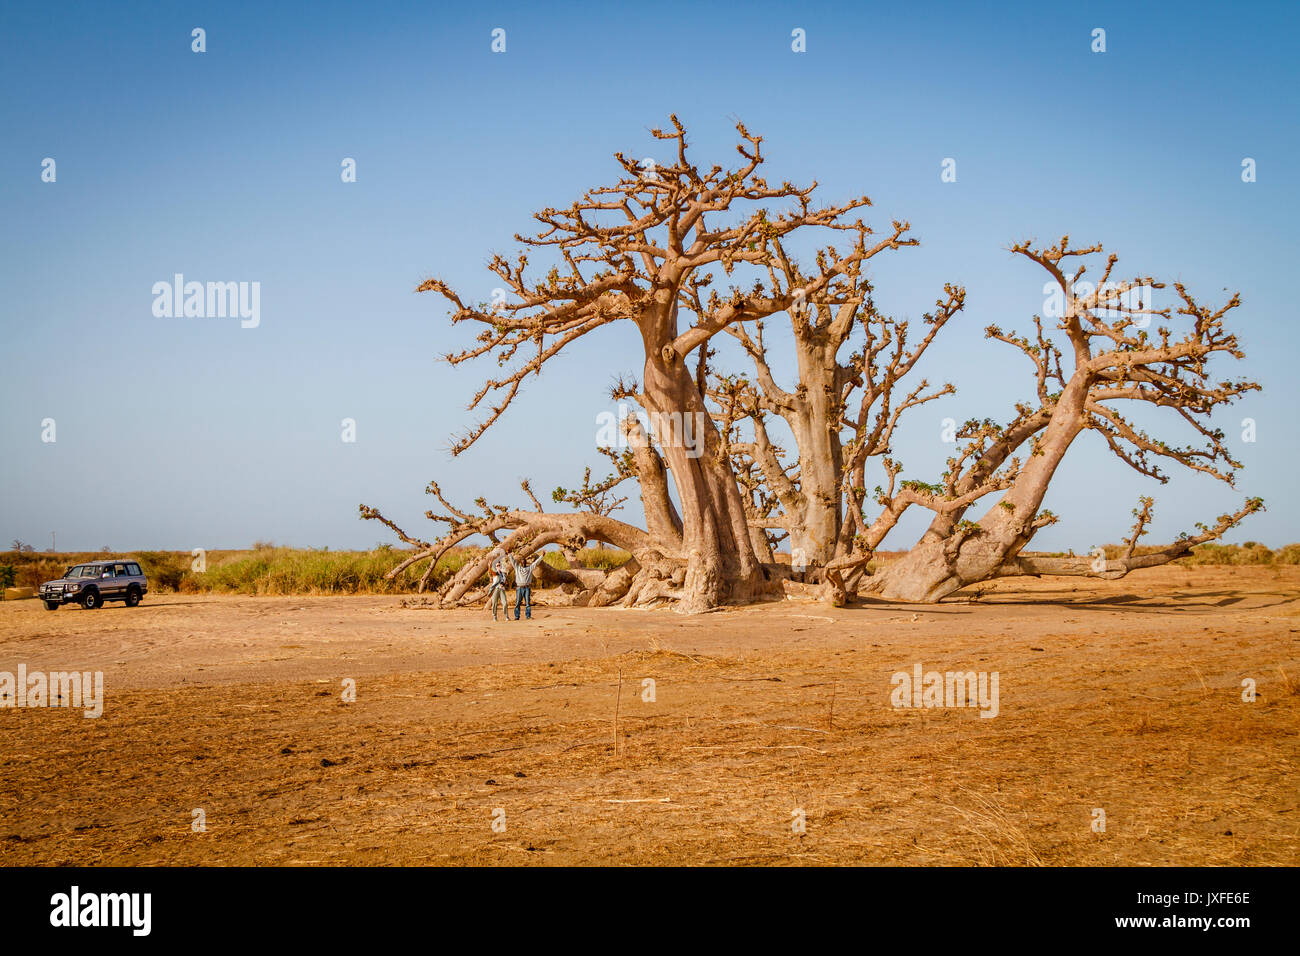 Il Senegal, Africa - aprile 26, 2016: turistico con guida in piedi con le braccia alta sotto un enorme baobab nella savana secca del sud ovest del Senegal. Foto Stock